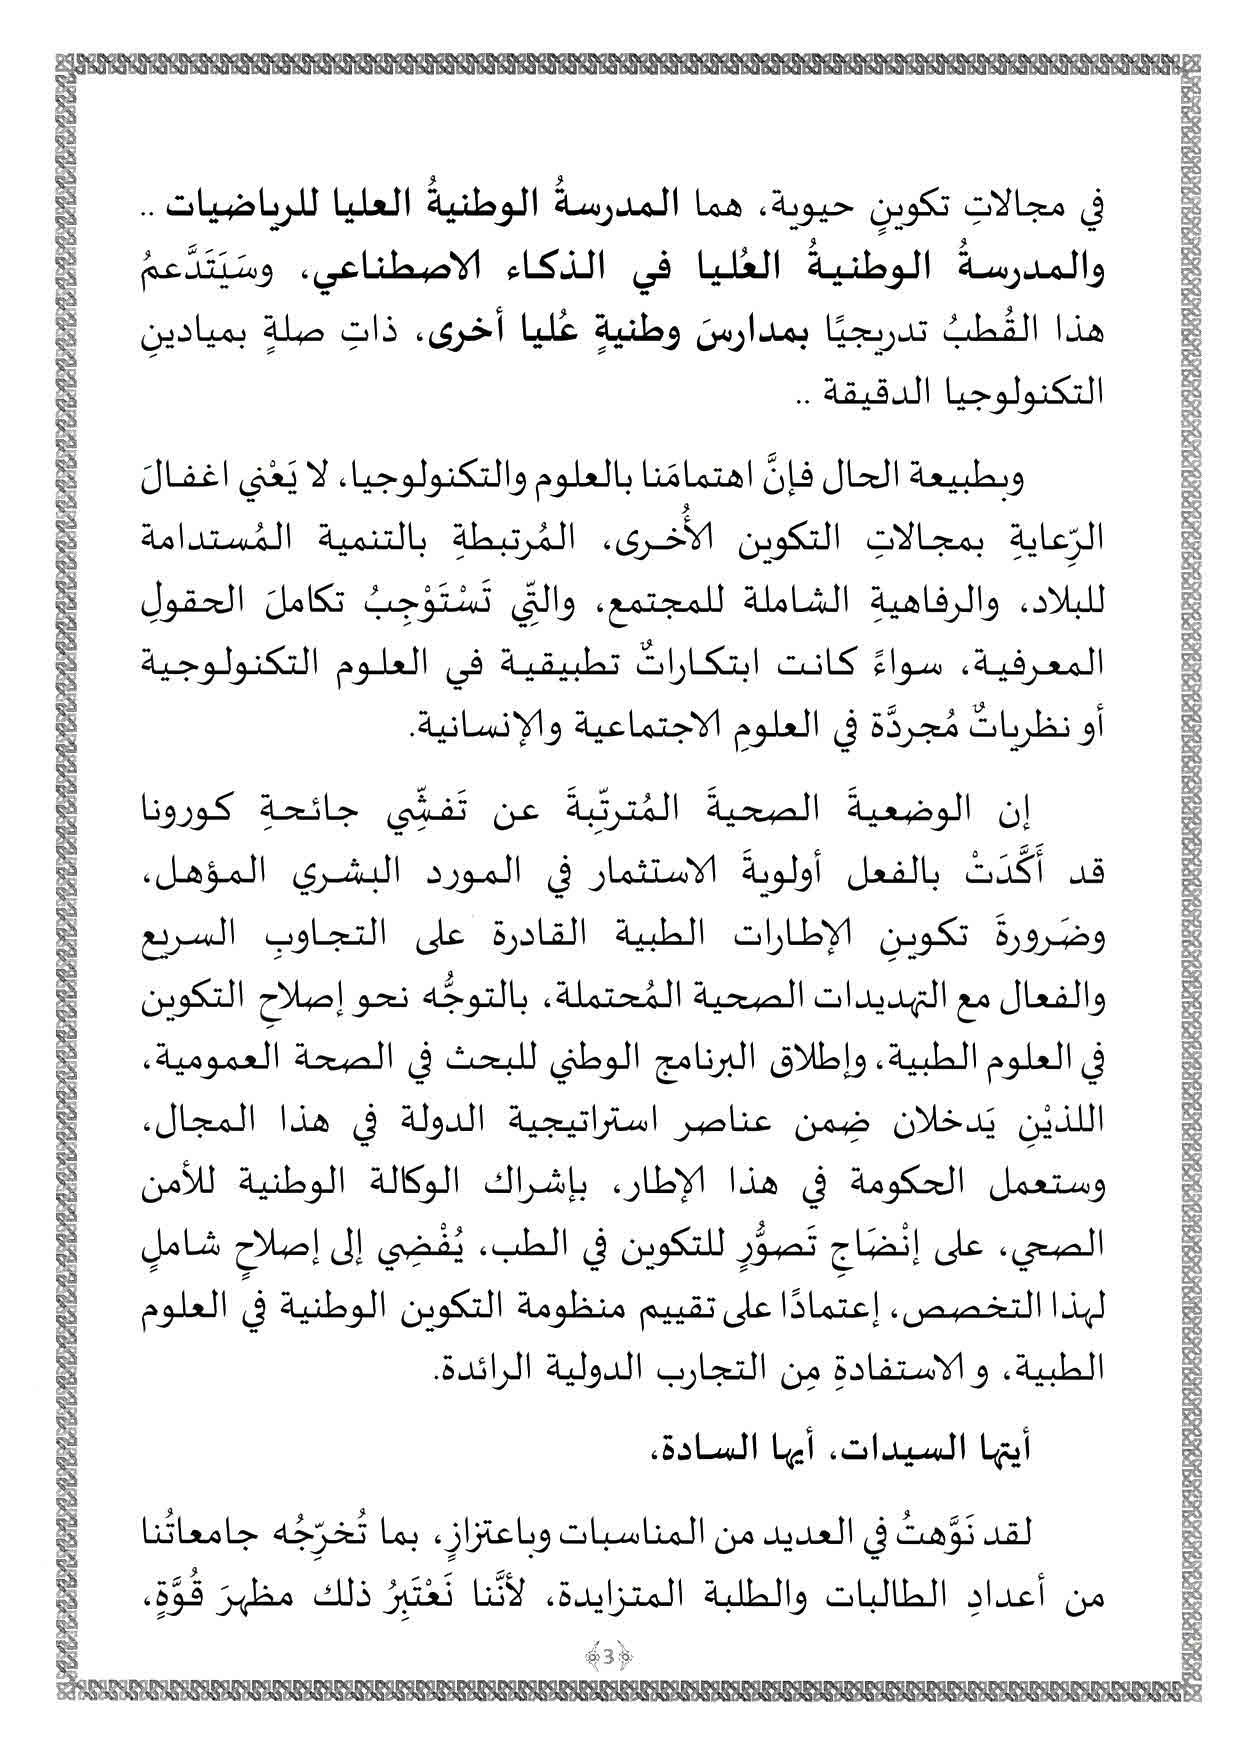 رسالة رئيس الجمهورية السيد عبد المجيد تبون بمناسبة افتتاح السنة الجامعية 2021 page 005